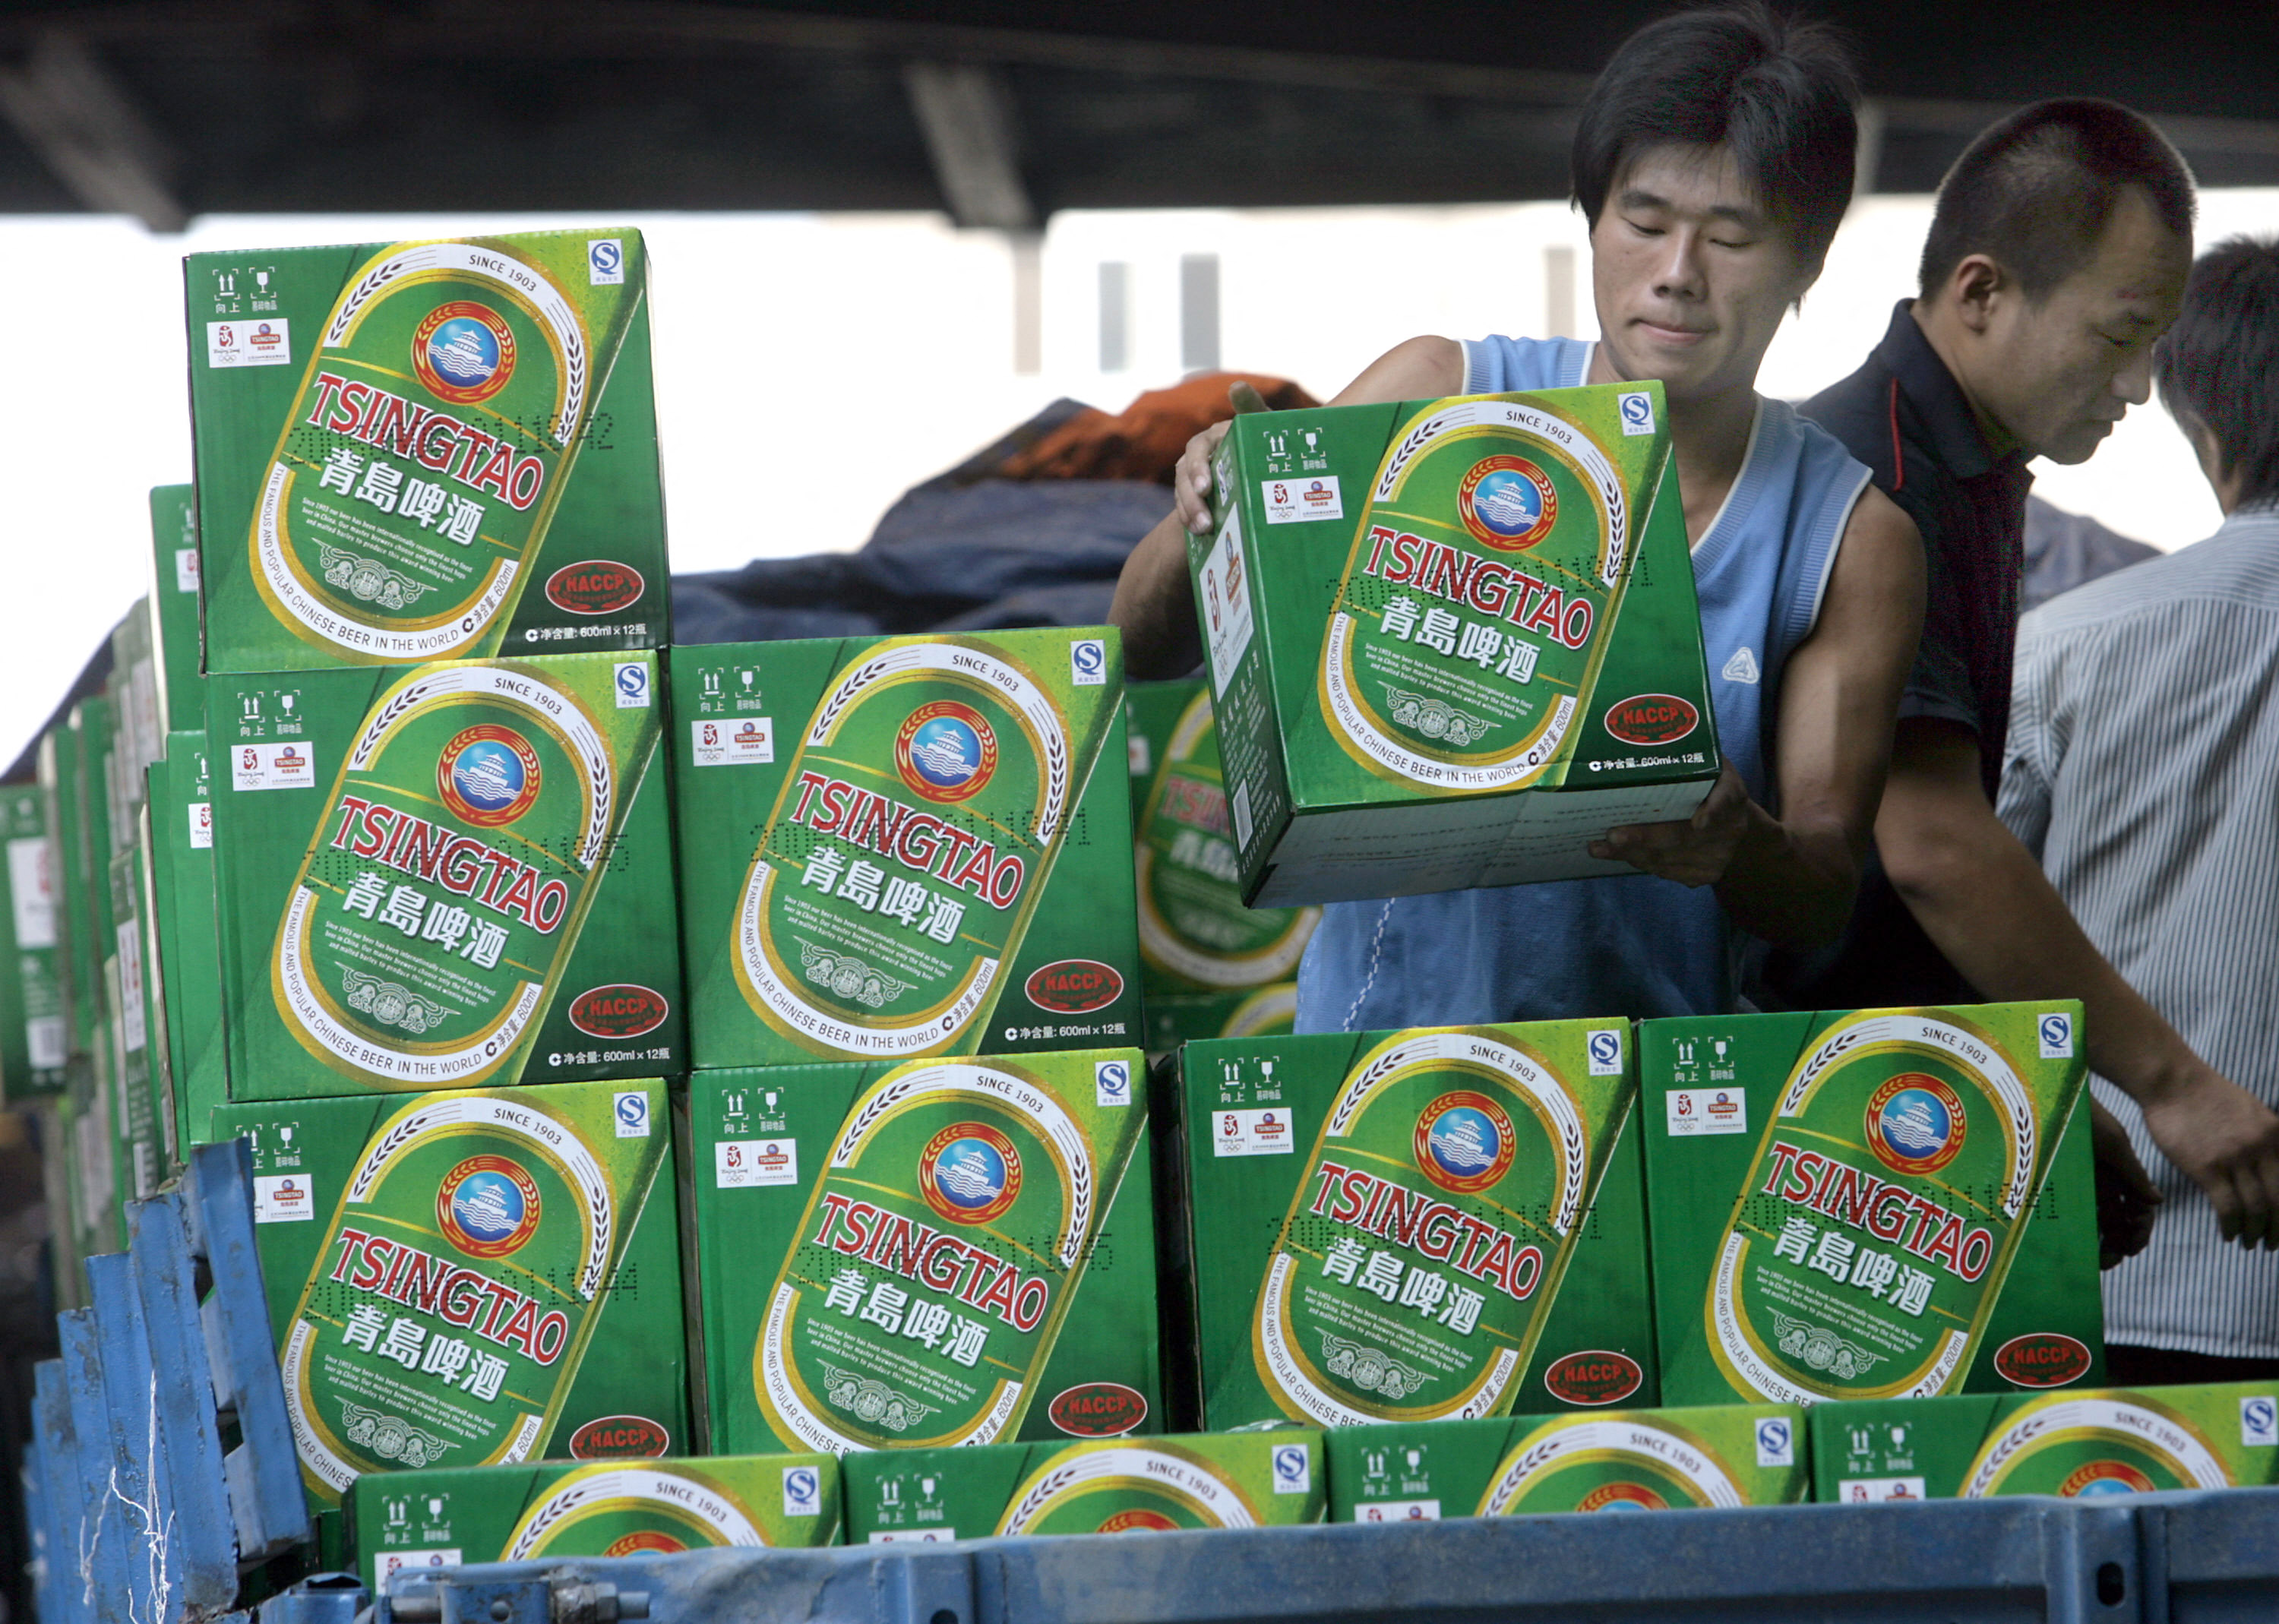 Tsingtao, deuxième brasseur de Chine, est l’une des marques de boissons les plus connues du pays. (Illustration) AFP/GOH CHAI HIN